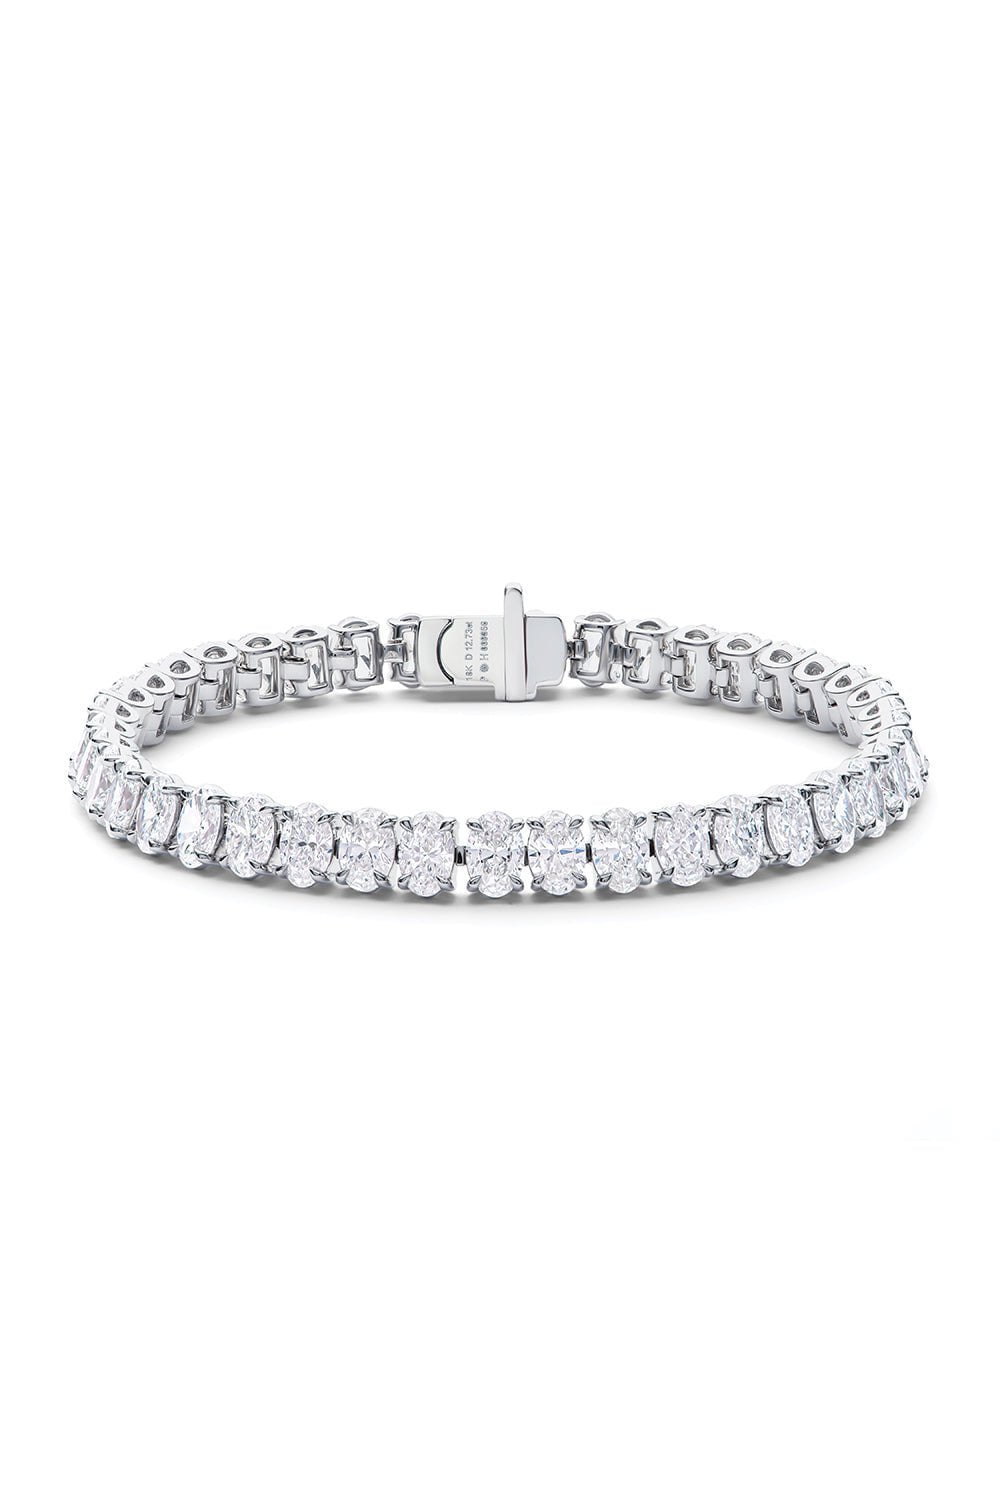 PHILLIPS HOUSE-Oval Diamond Line Bracelet-WHITE GOLD